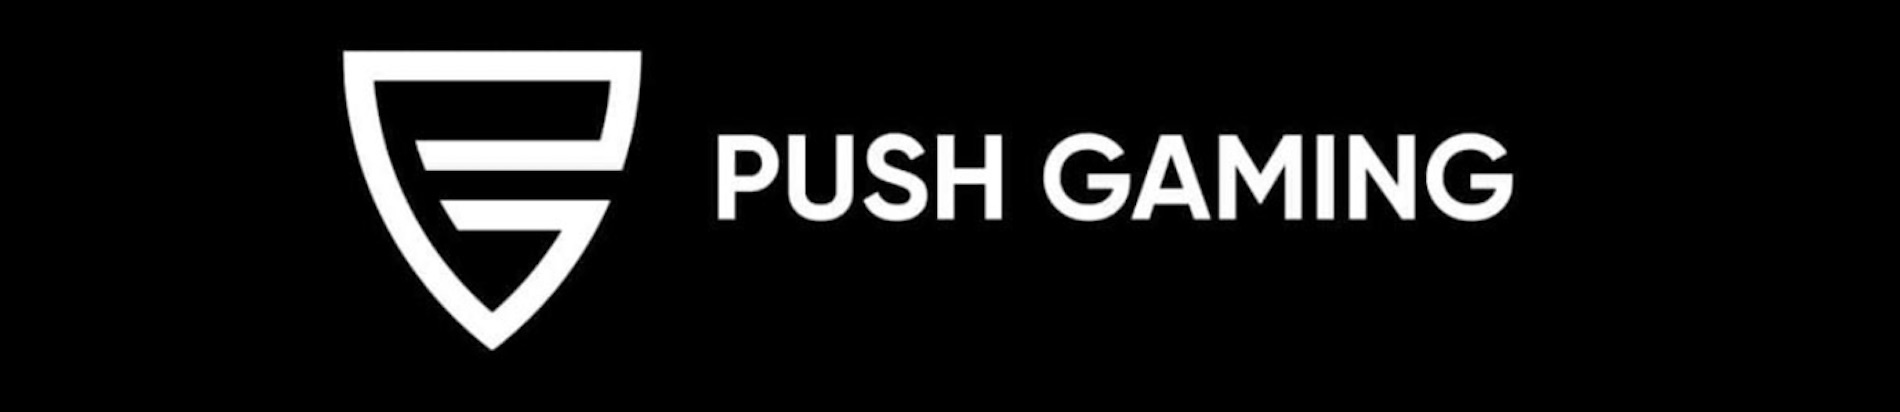 Push Gaming Teams Up With SG Digital